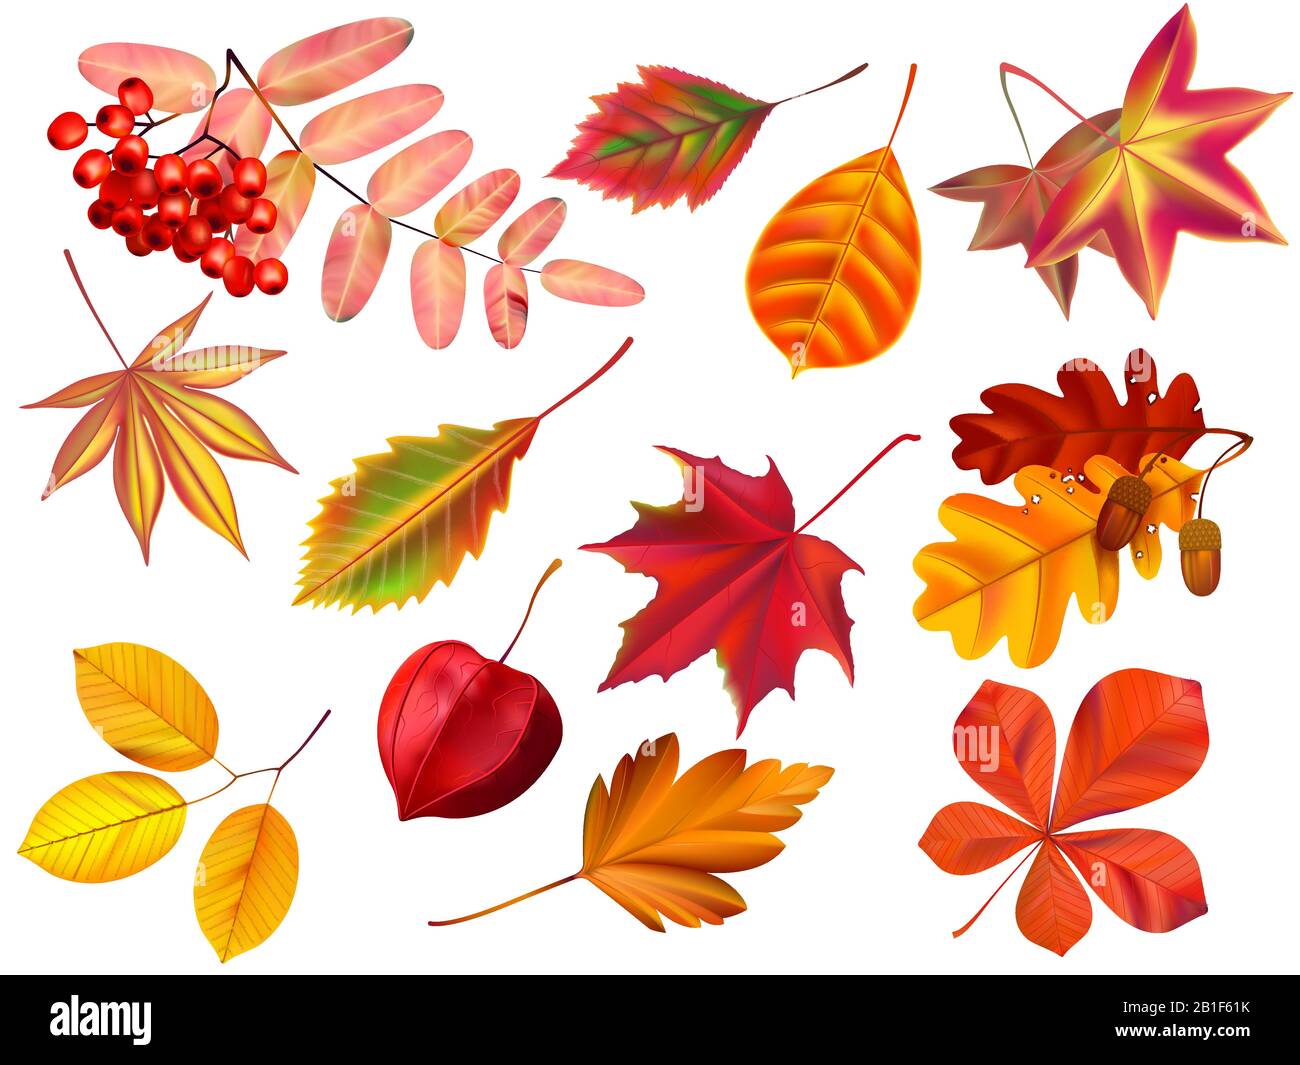 Färben Sie Herbstblätter. Gestürzte Blätter, gefärbte trockene Blätter und gelbe Blätter realistische Vektorgrafik Stock Vektor